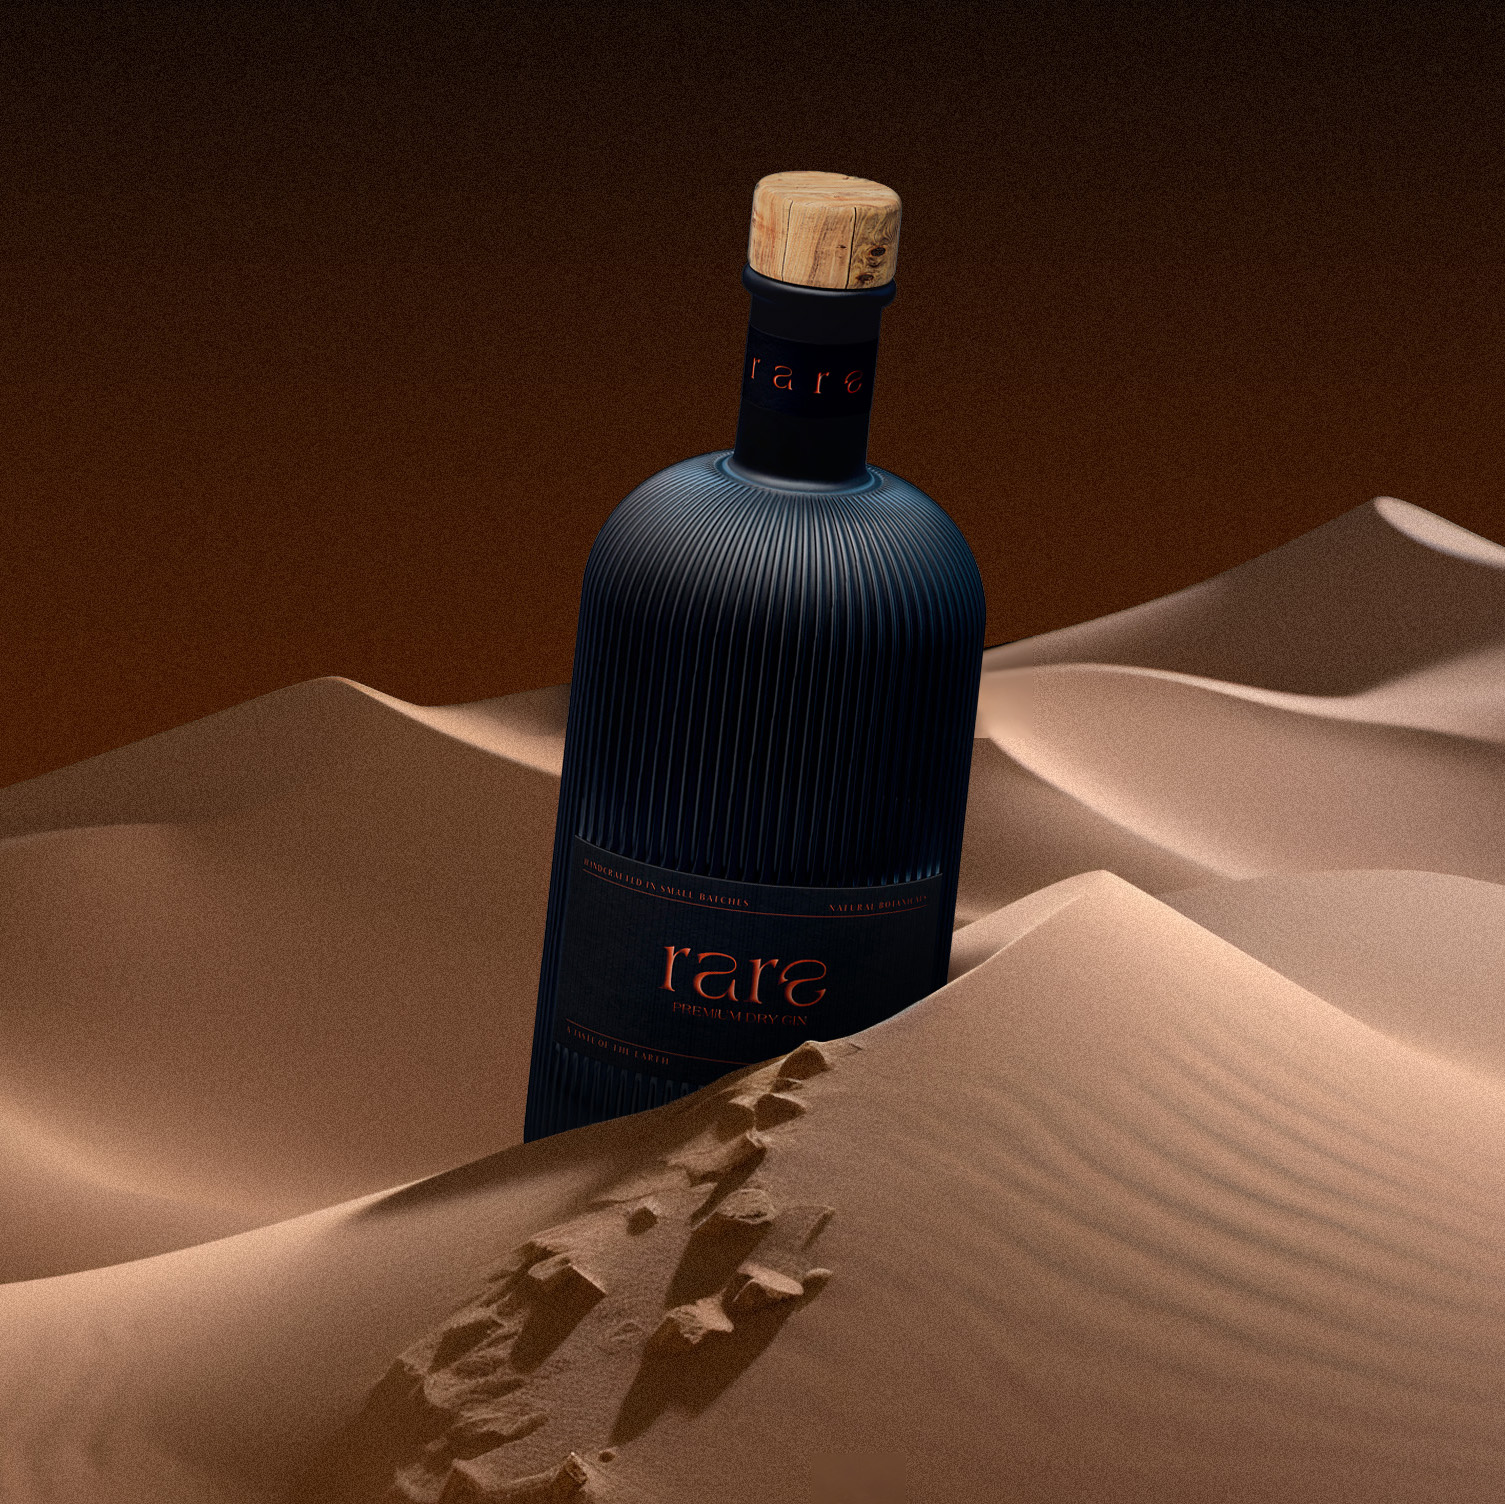 A luxury gin bottle in the desert